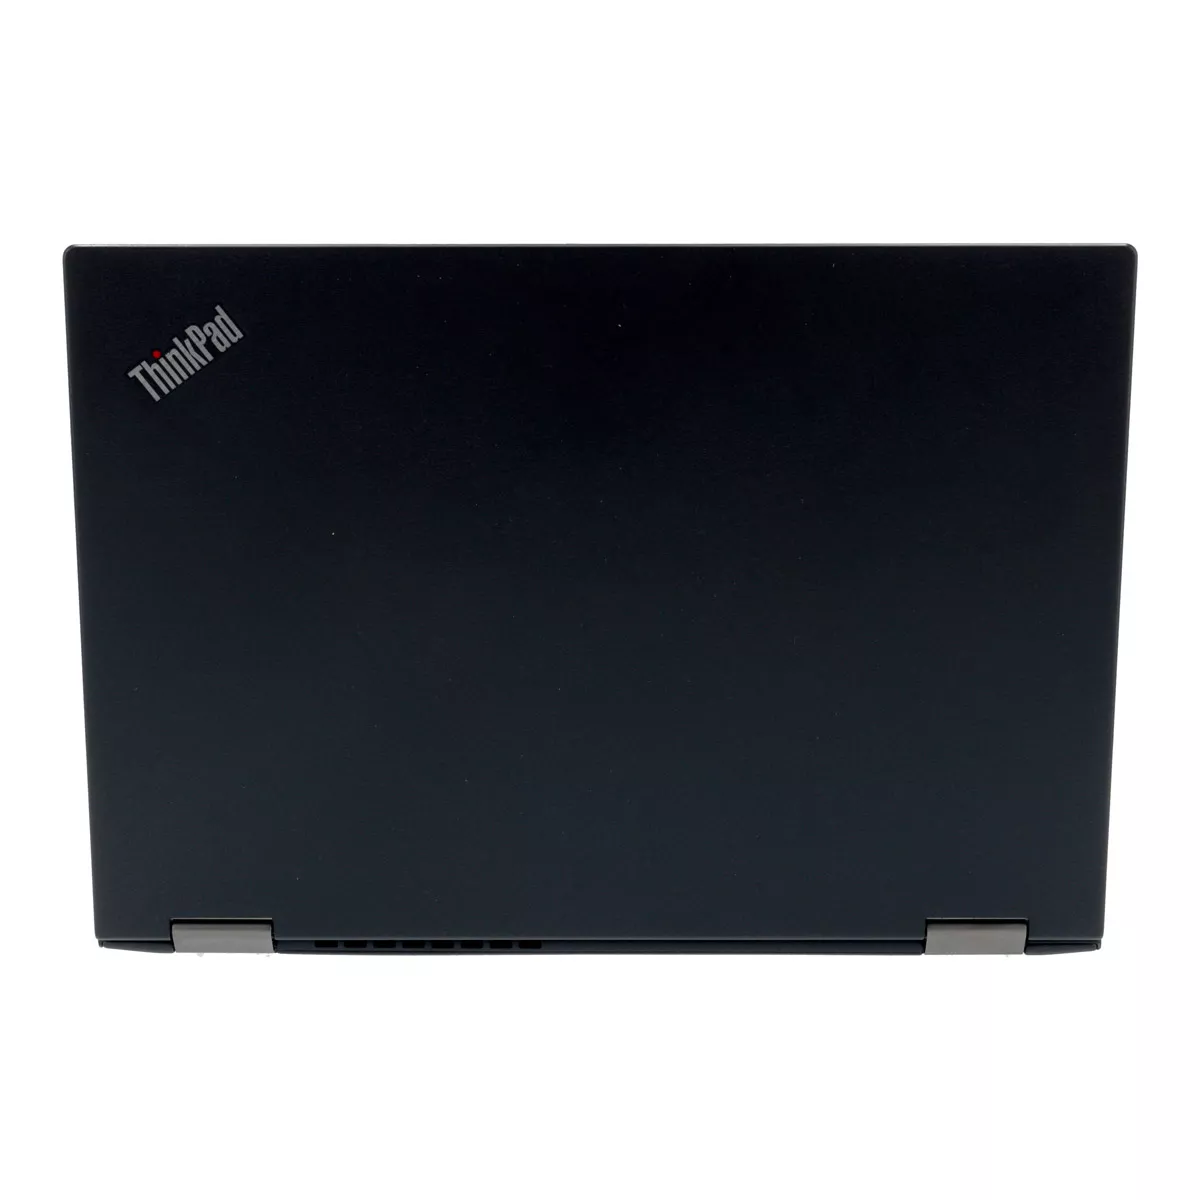 Lenovo ThinkPad X390 Yoga Core i7 8665U Touch 16 GB 500 GB M.2 SSD Webcam B